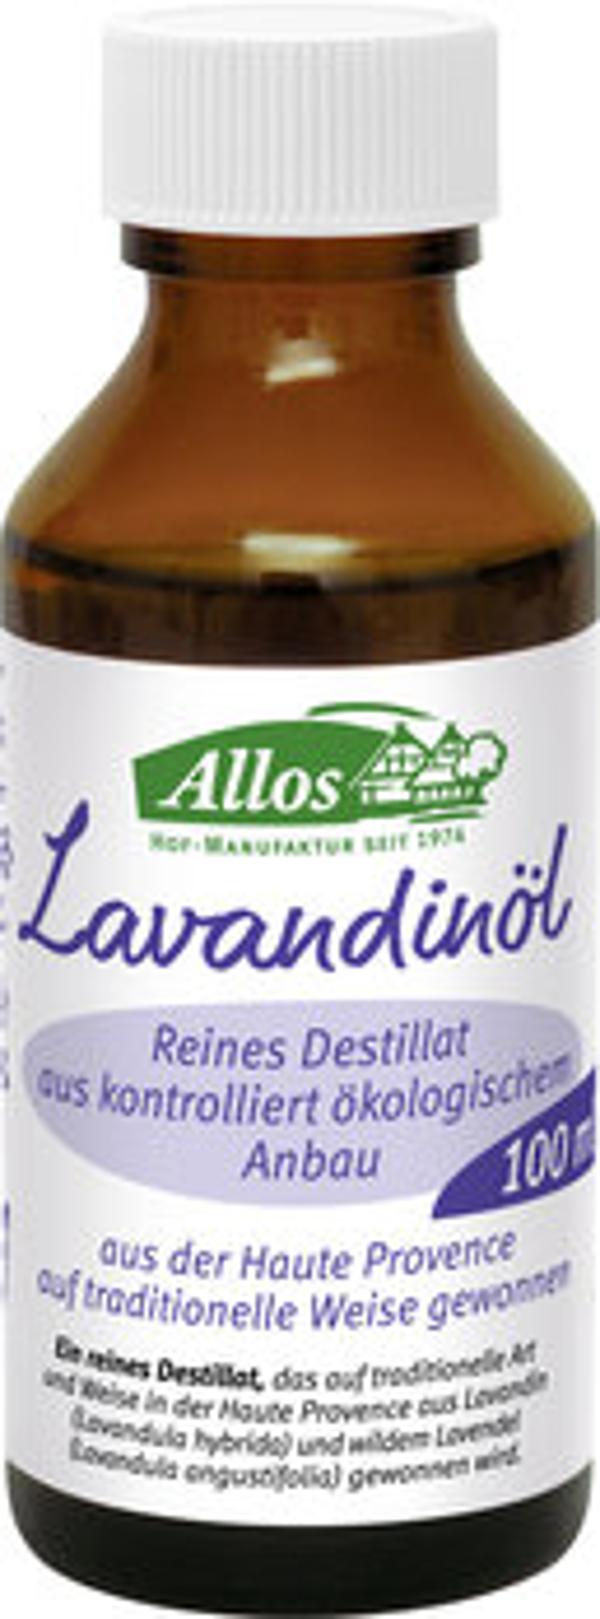 Produktfoto zu Lavandinöl